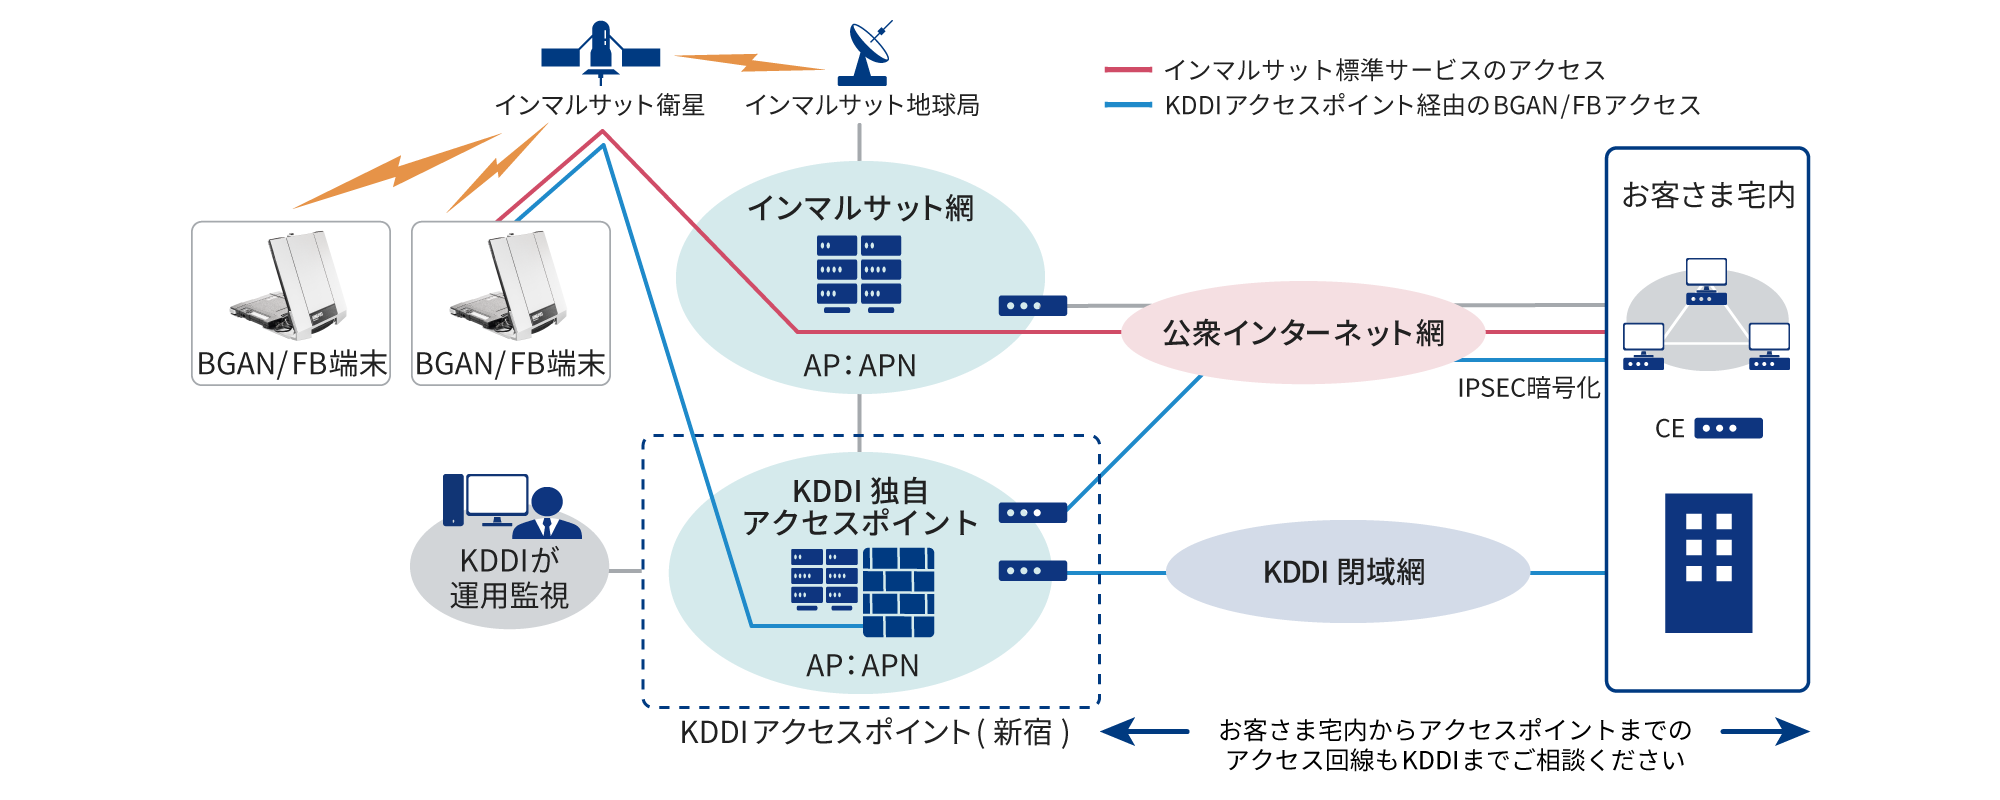 インマルサットBGAN/FBサービスは、東京に設置された専用アクセスポイントがご利用いただけます。お客さま宅内からアクセスポイントまでのアクセス回線もKDDIまでご相談下さい。